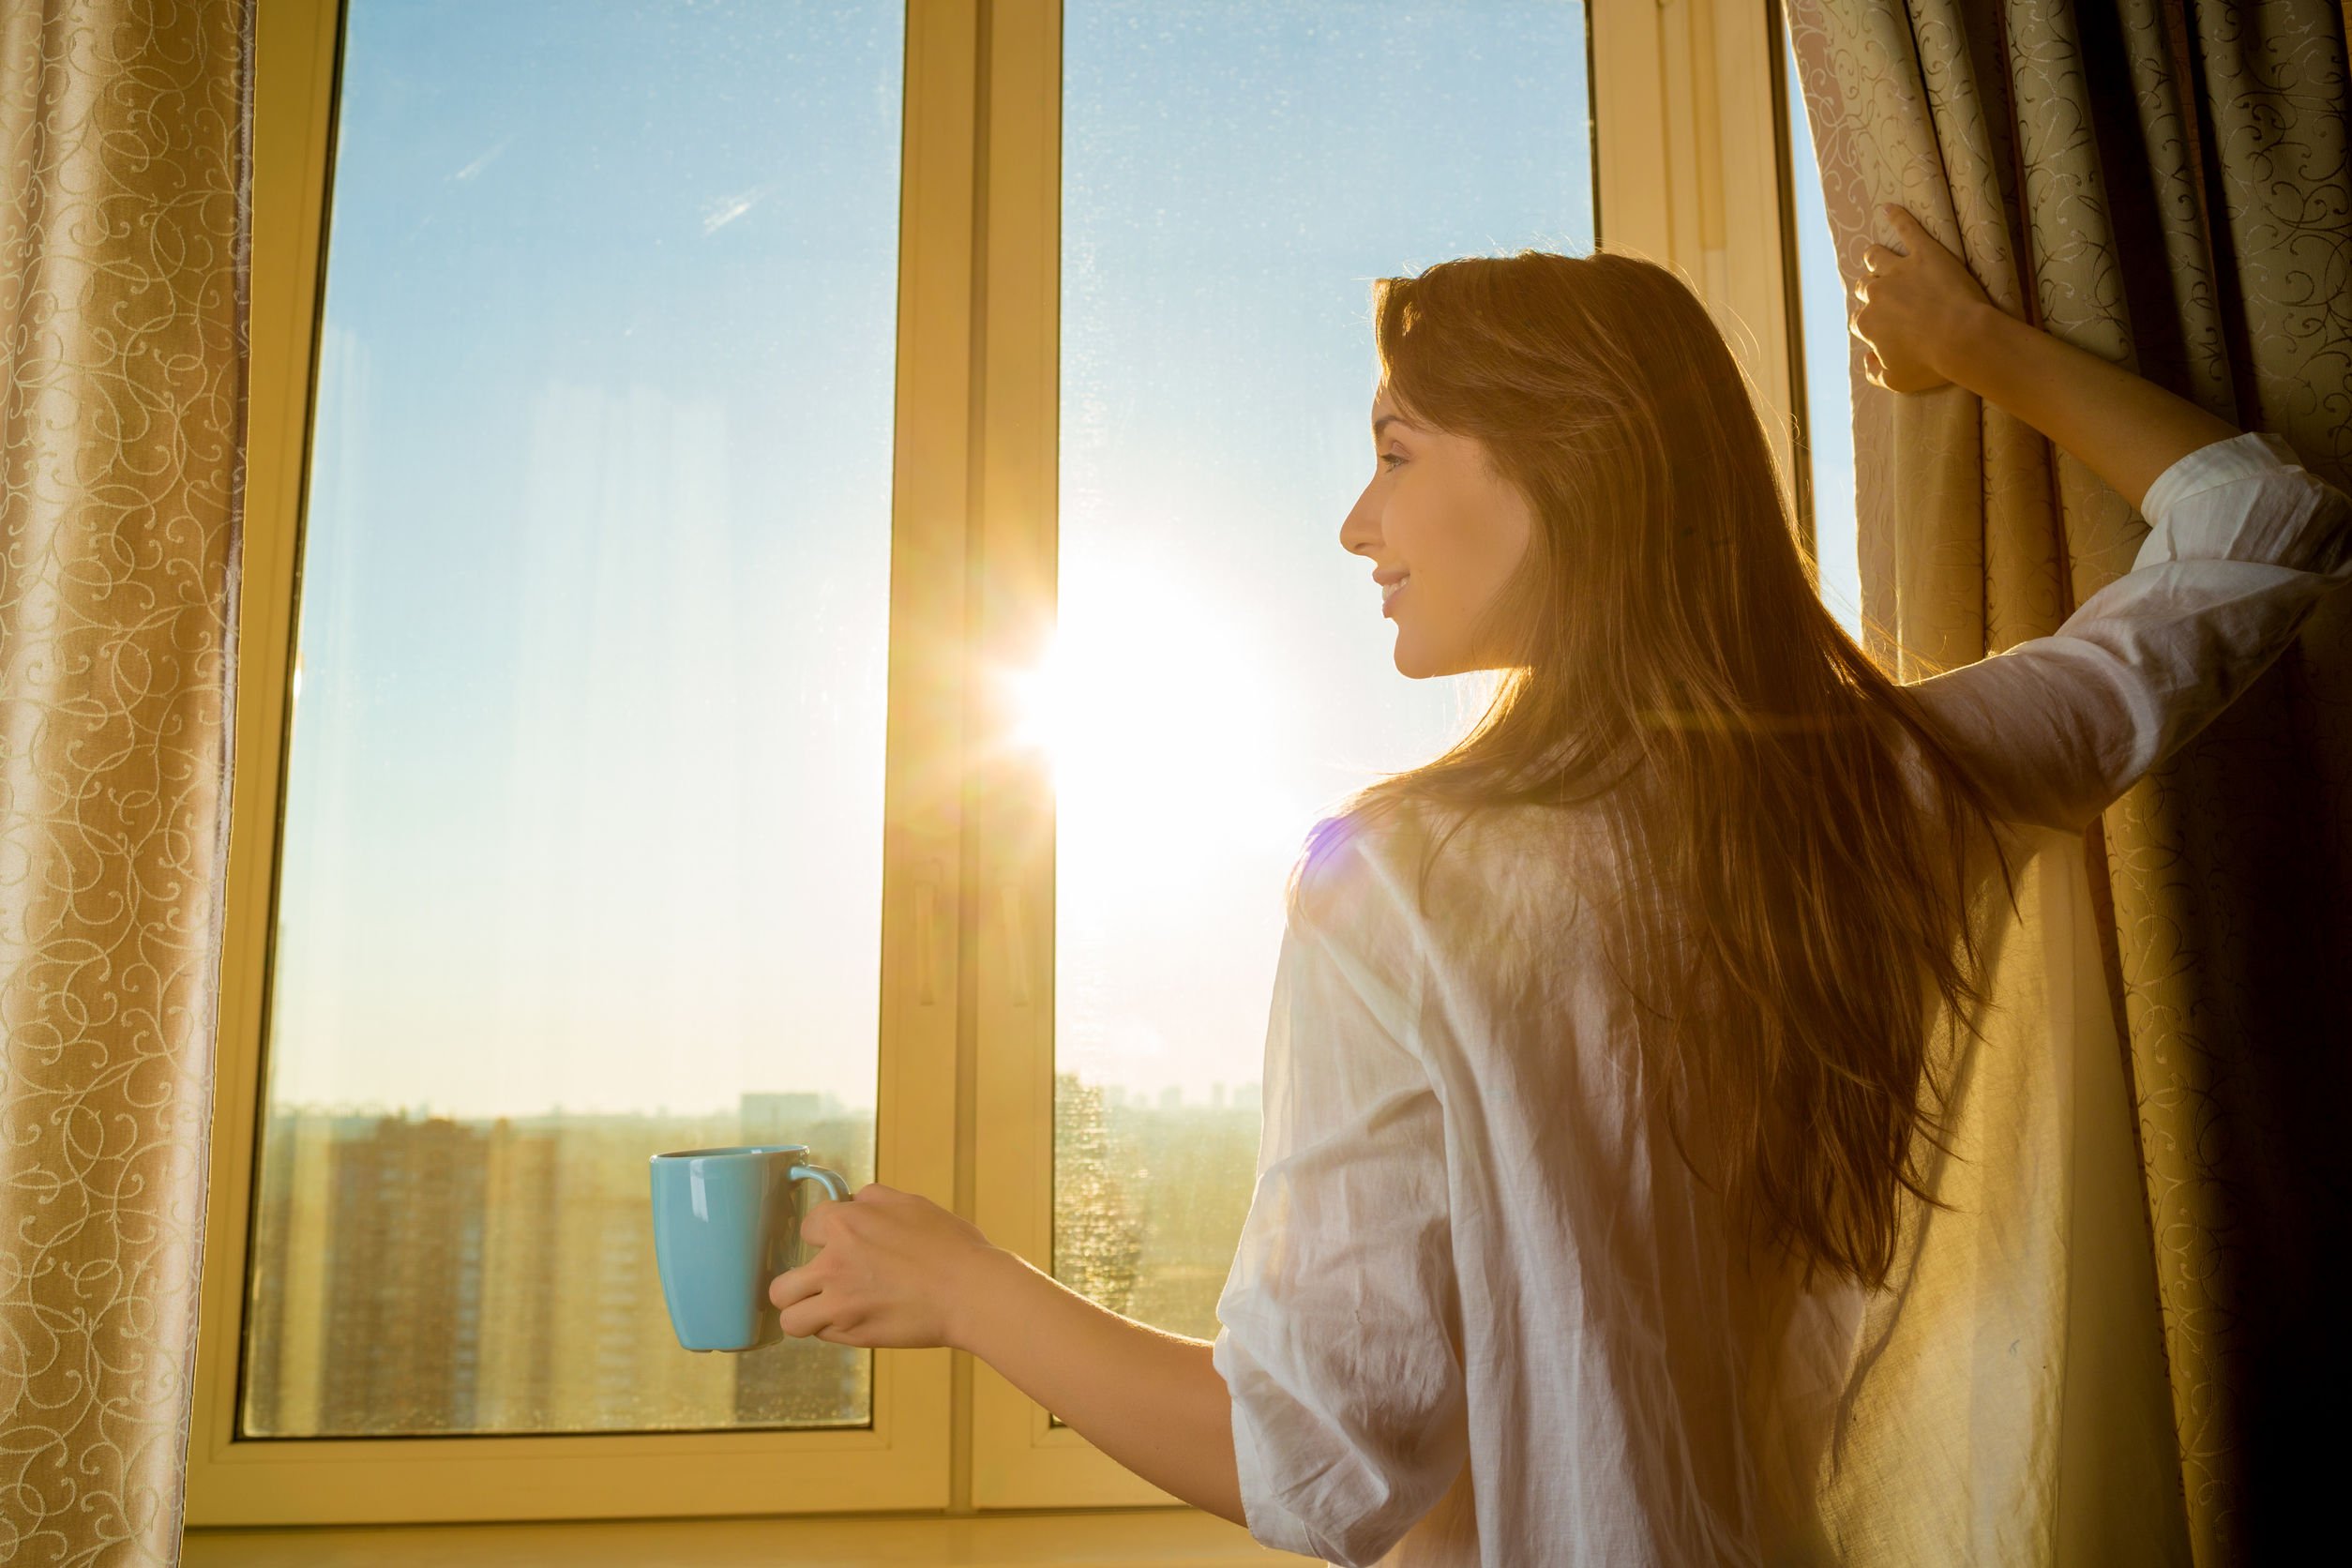 Mulher segurando uma cortina com a mão direita e segurando uma caneca com a mão esquerda. Ela olha pela janela, que está muito clara pela luz do sol.